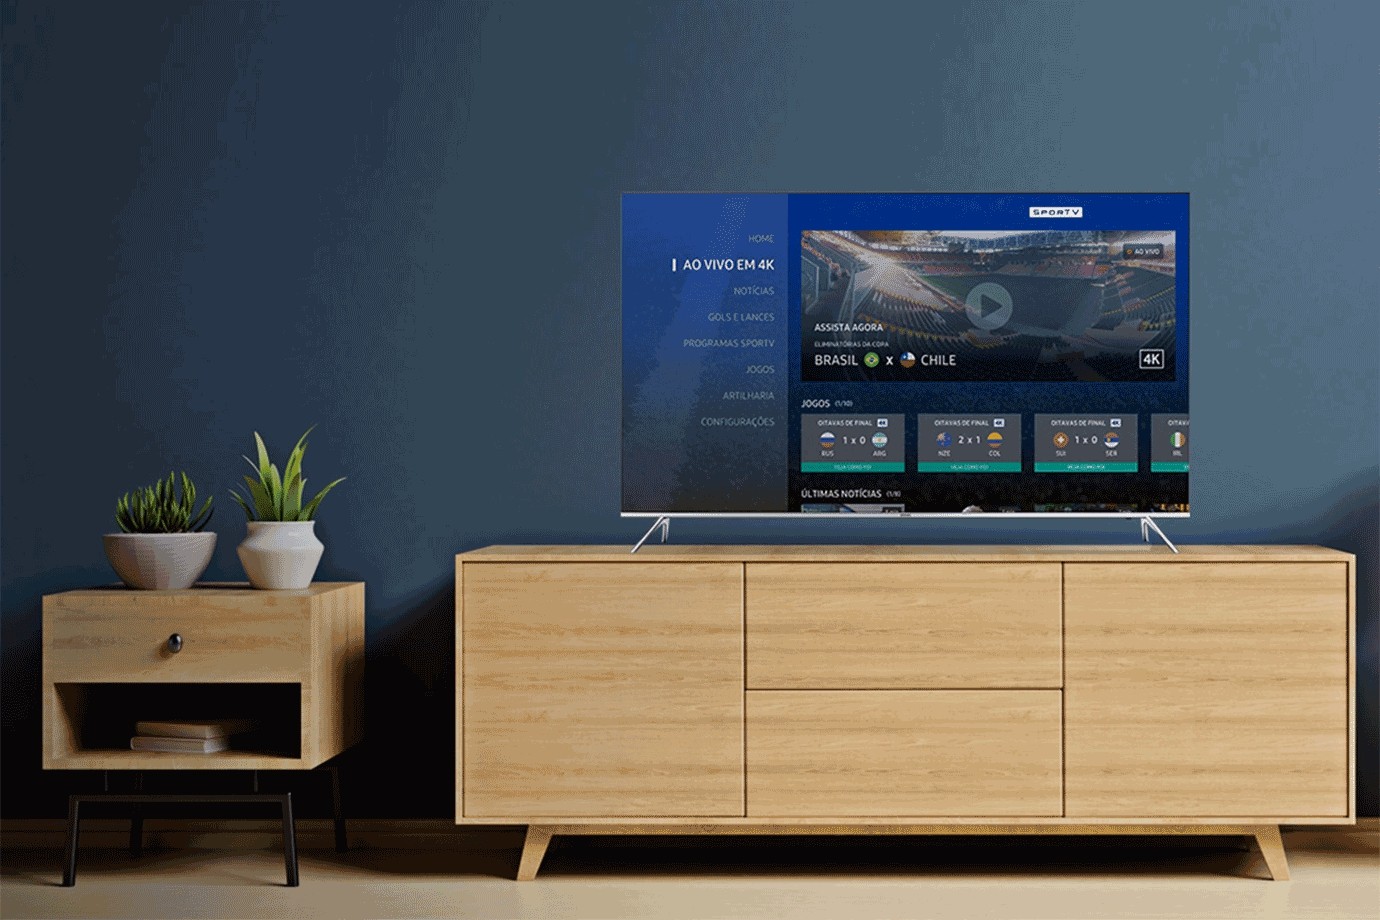 Samsung aposta no Steam Link em suas smart TVs para chamar a